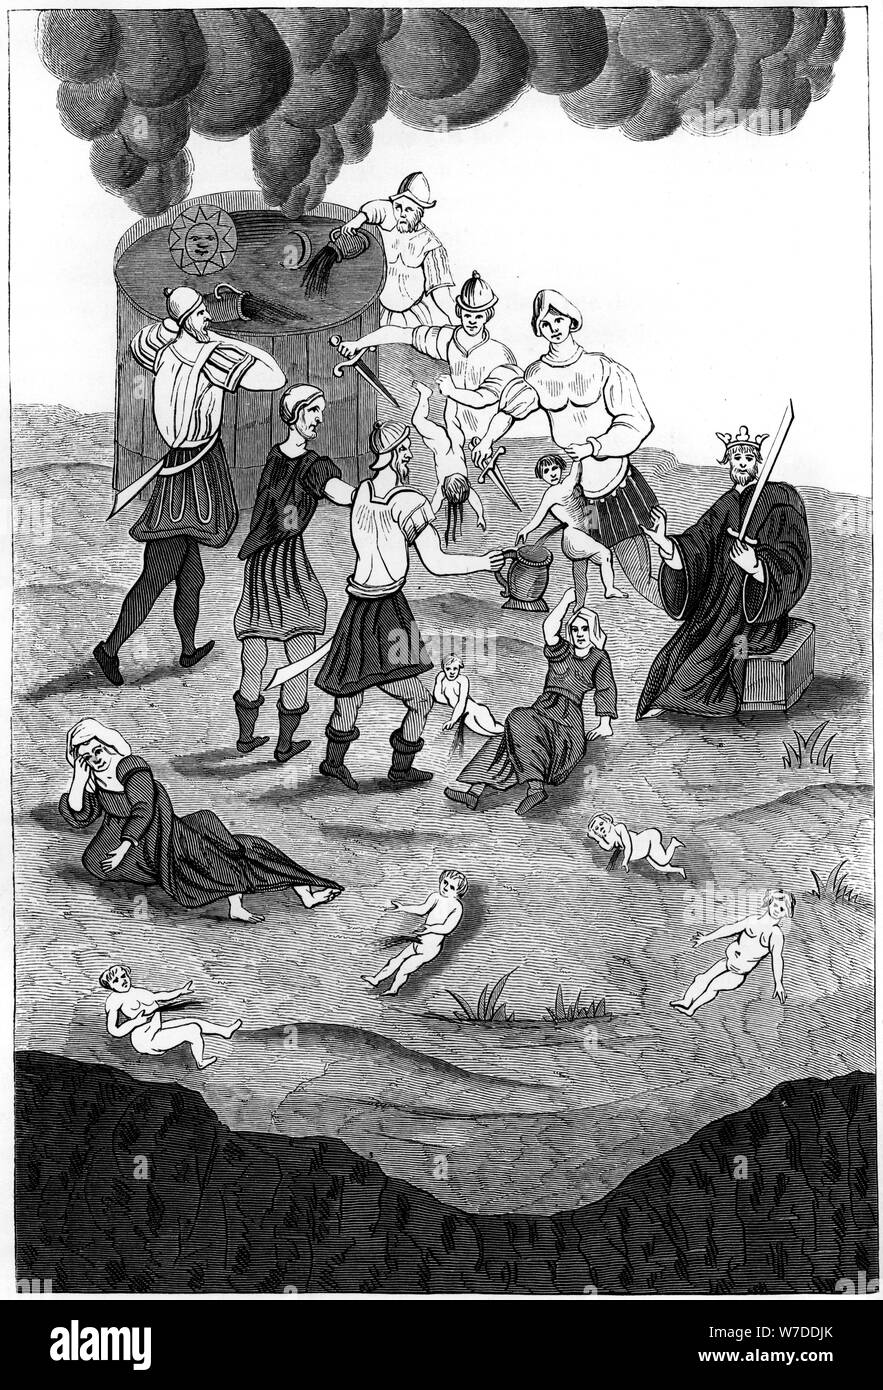 Gli ebrei di prendere il sangue da bambini cristiani per i loro riti mistici, 1849. Artista: Un Bisson Foto Stock